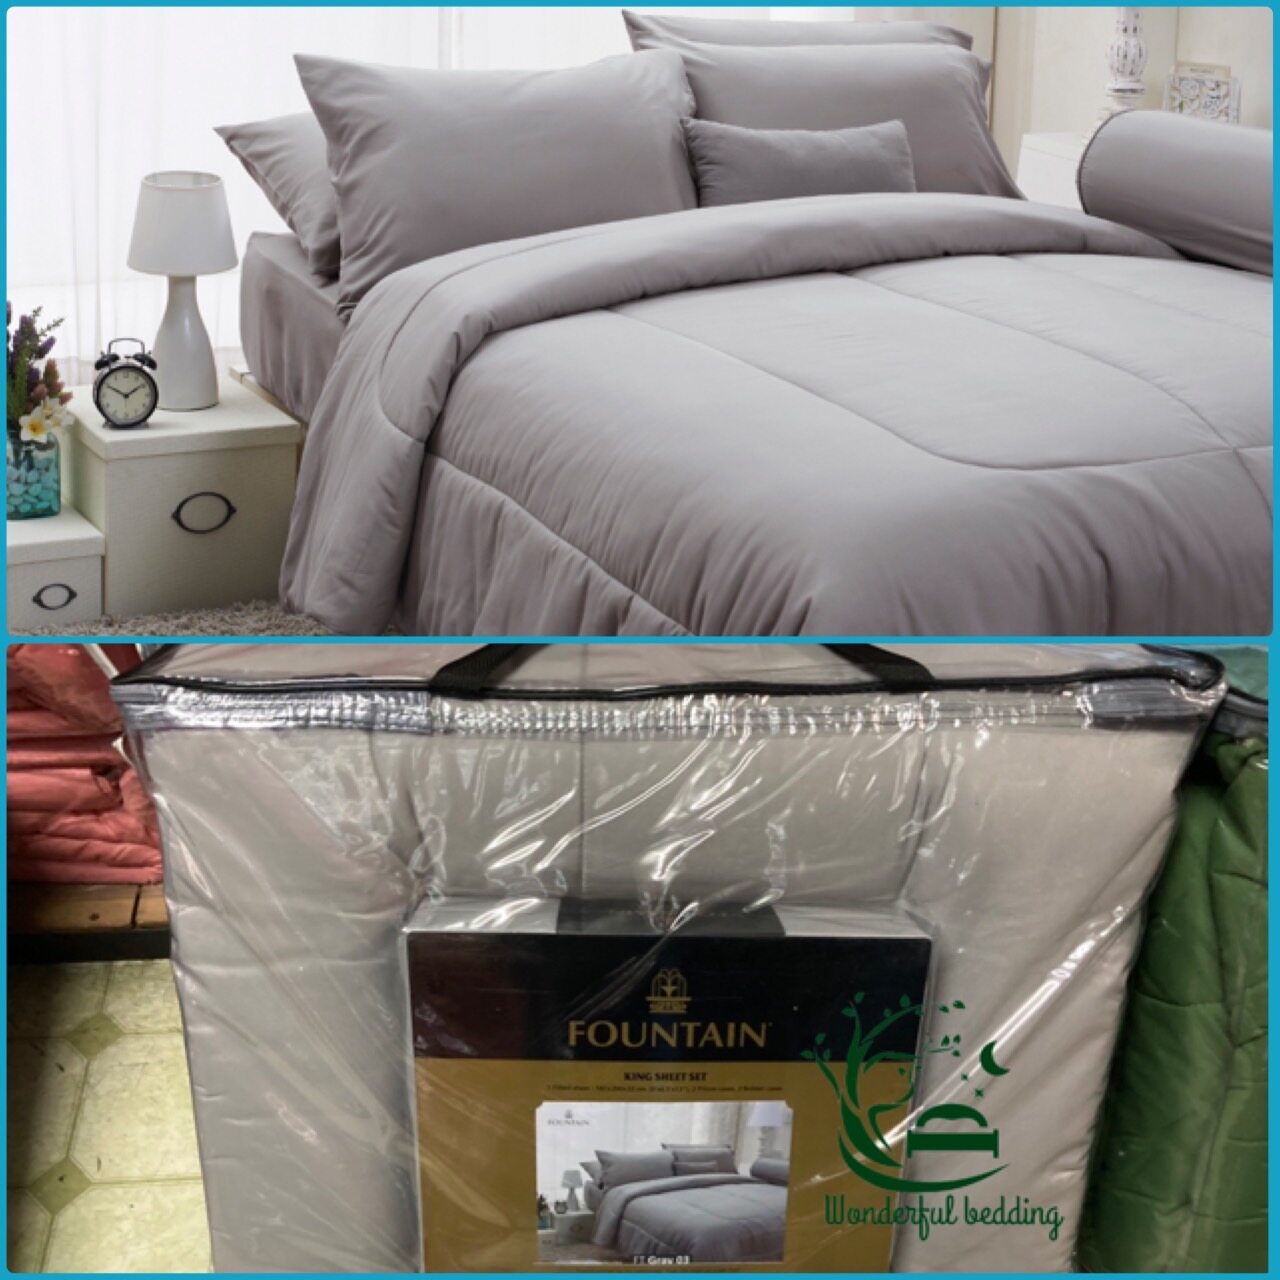 FOUNTAIN ผ้านวม + ชุดผ้าปู ผ้าปู ที่นอน แท้ 100% FTC สีพื้น เขียว Green Gray เทา ขนาด 3.5 5 6ฟุต ชุดเครื่องนอน ผ้านวม ผ้าปูที่นอน wonderful bedding  สี → Gray3ขนาดสินค้า 6 ฟุต